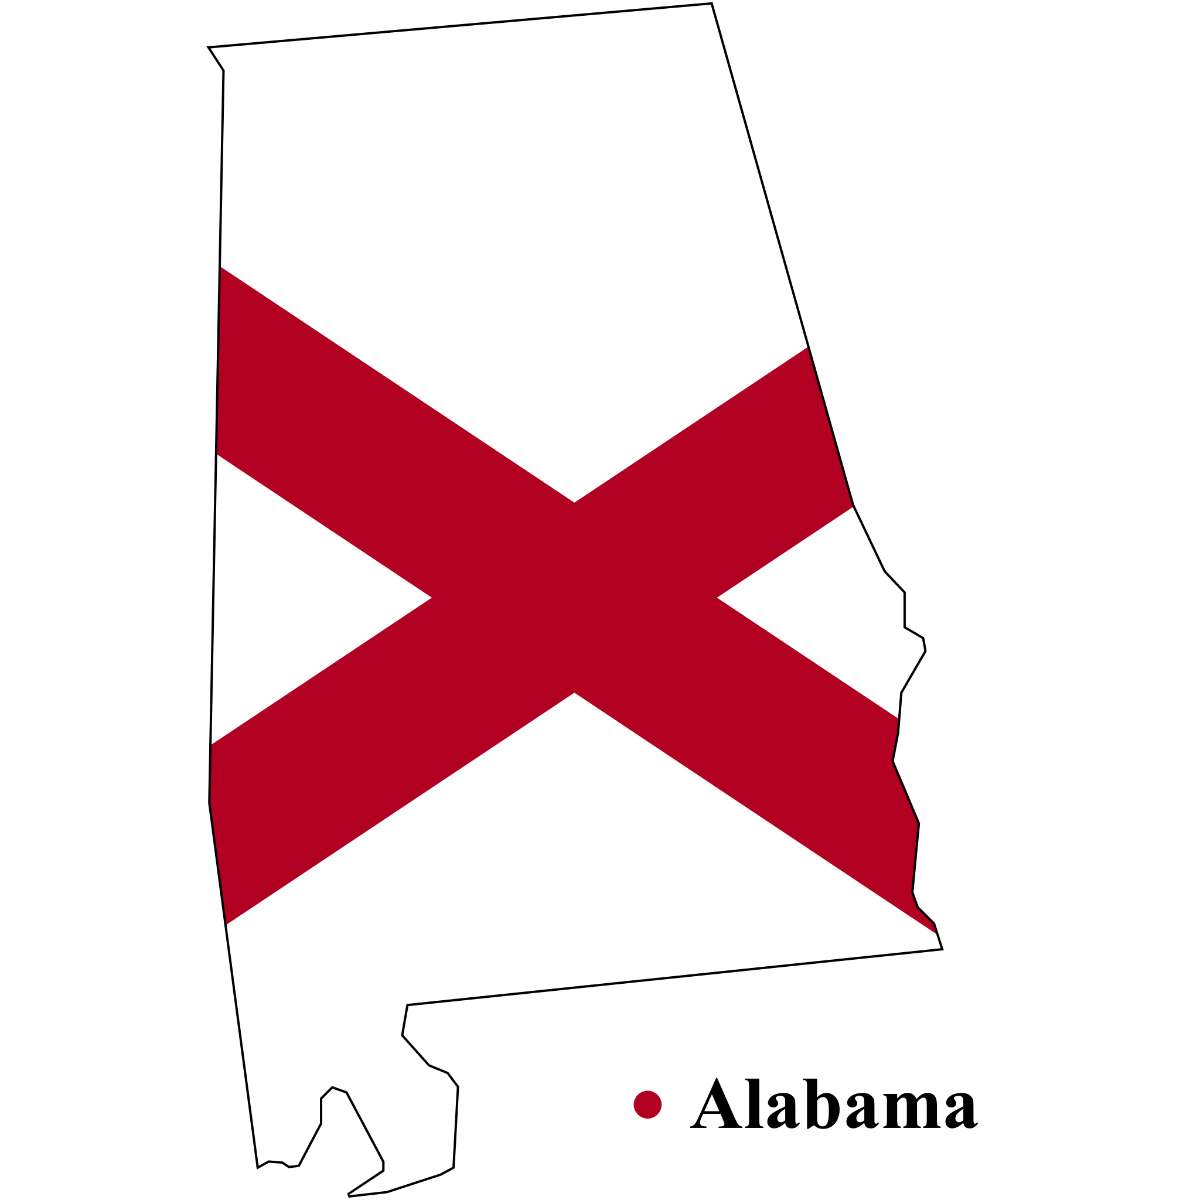 Alabama State map cutout with Alabama flag superimposed